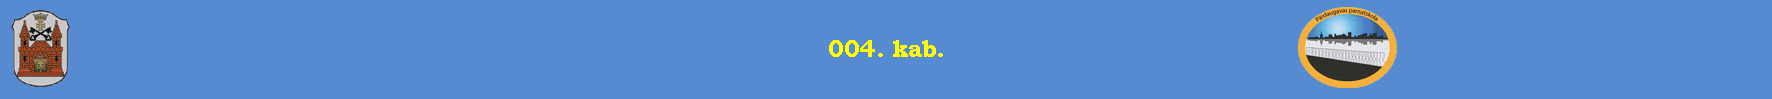 004. kab.